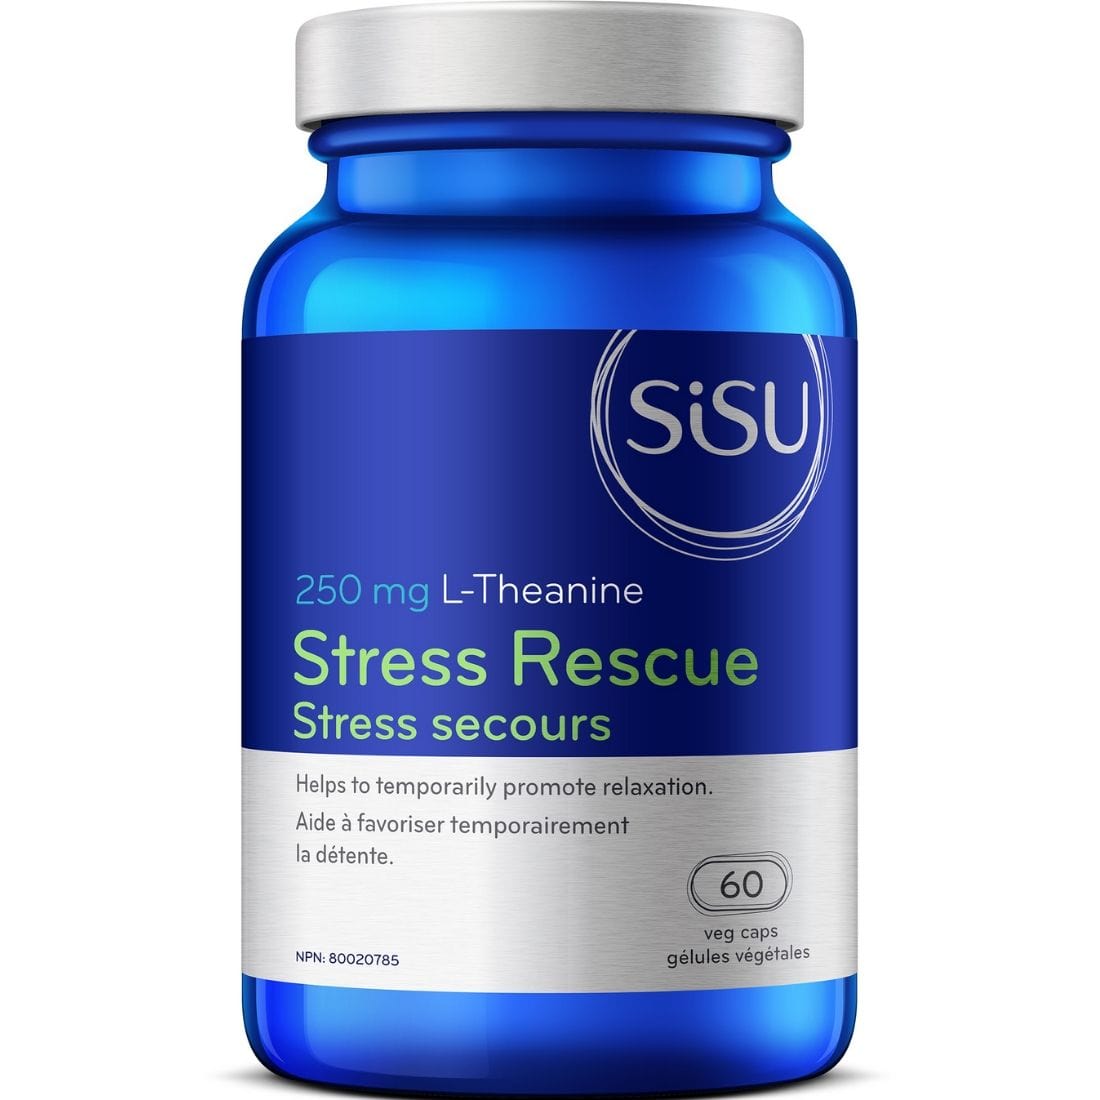 SISU Stress Rescue L-Theanine 250mg (Suntheanine), 60 Veg Caps